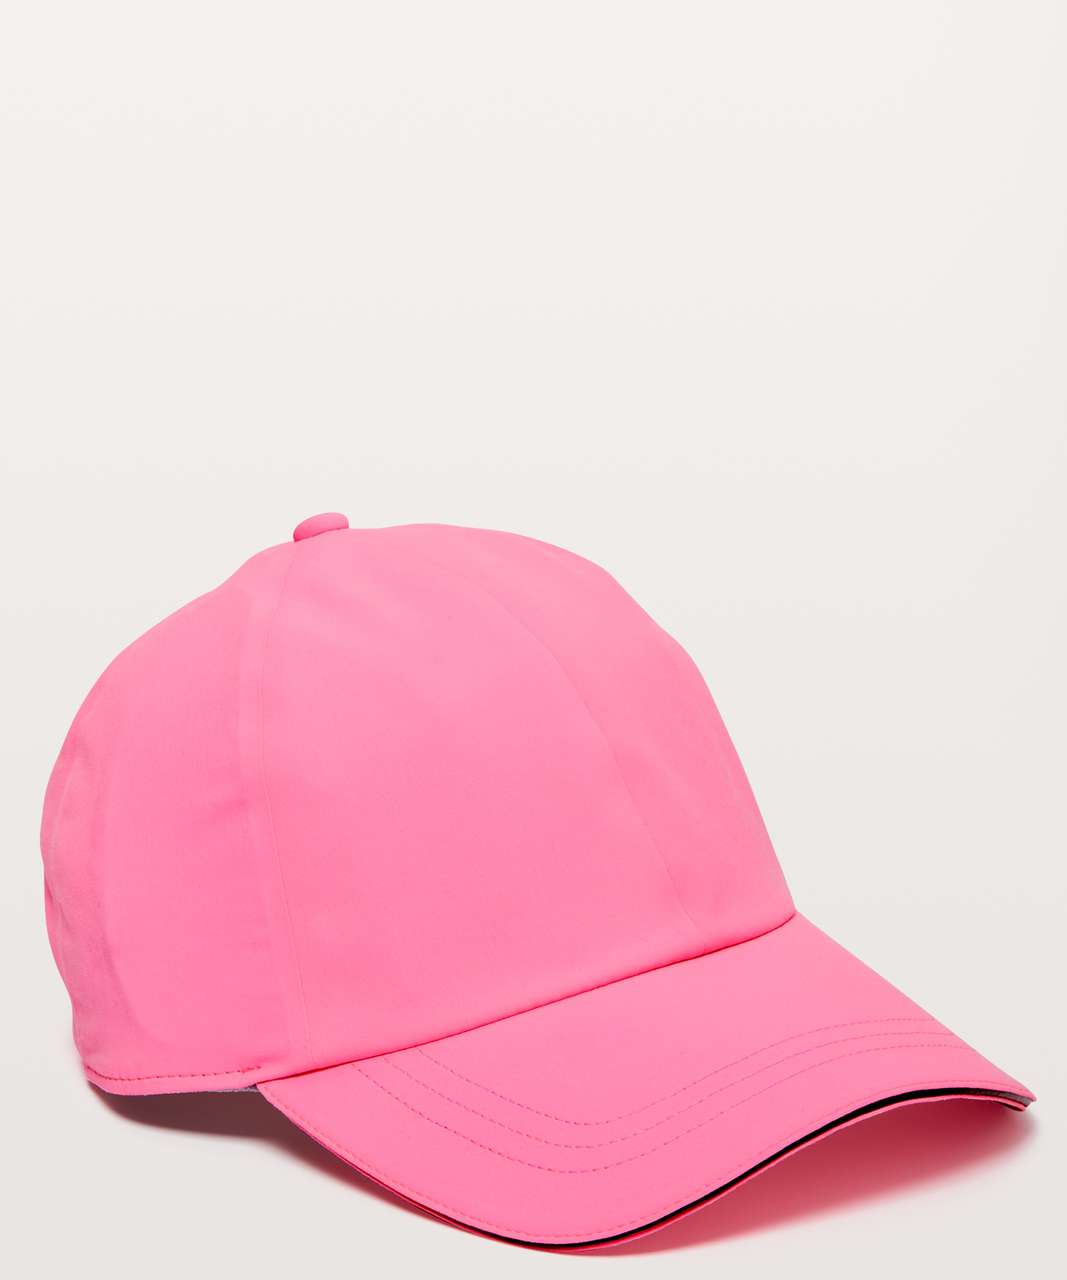 Lululemon Baller Hat Run - Zing Pink Light